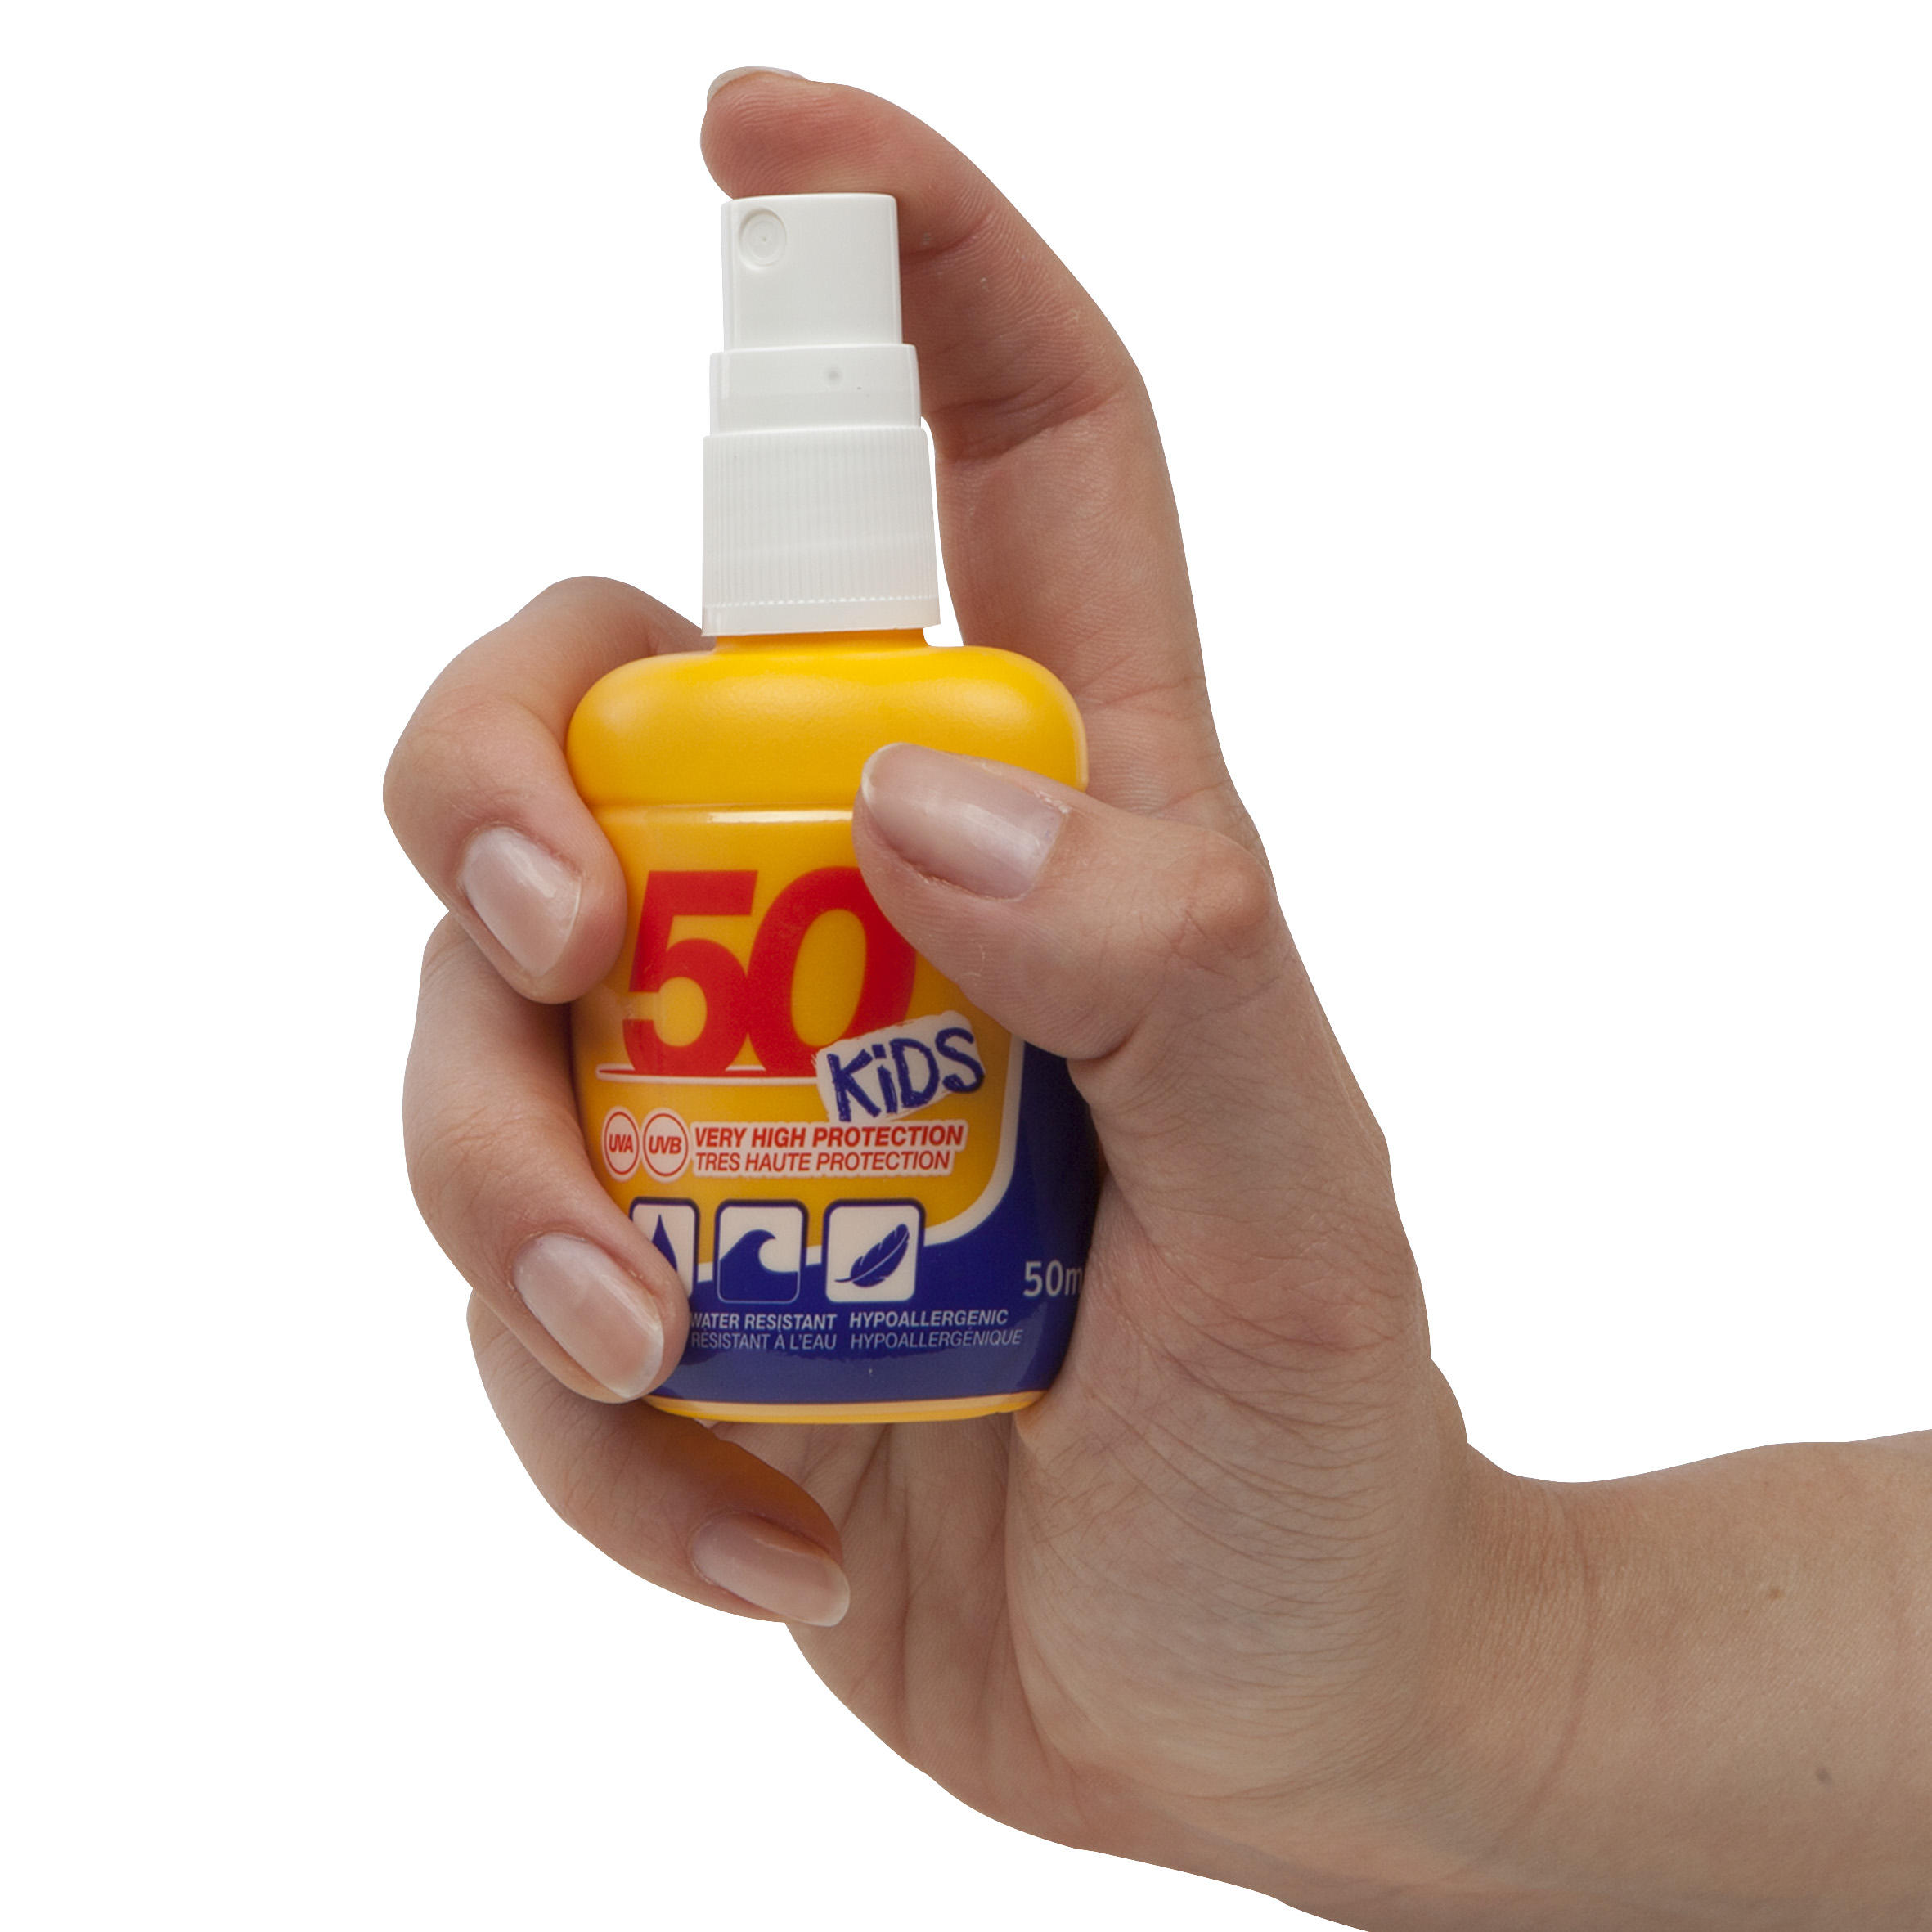 SPRAY SPF50+ Sun Protection Cream - 50ml 4/5